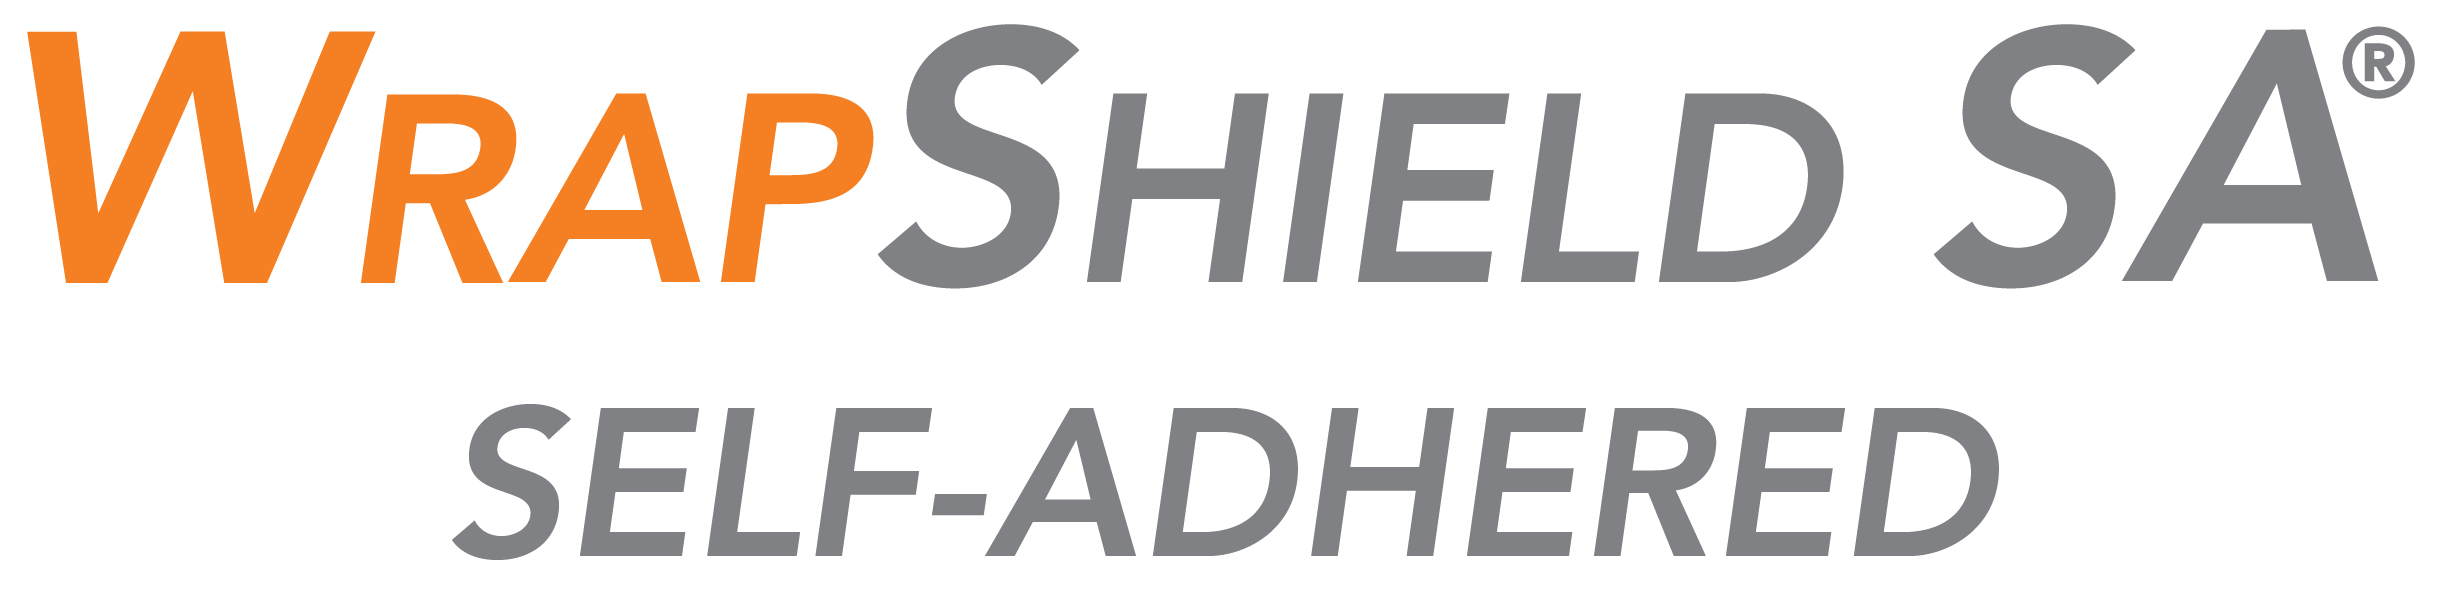 WrapShieldSA Stacked Logo HighRes 01